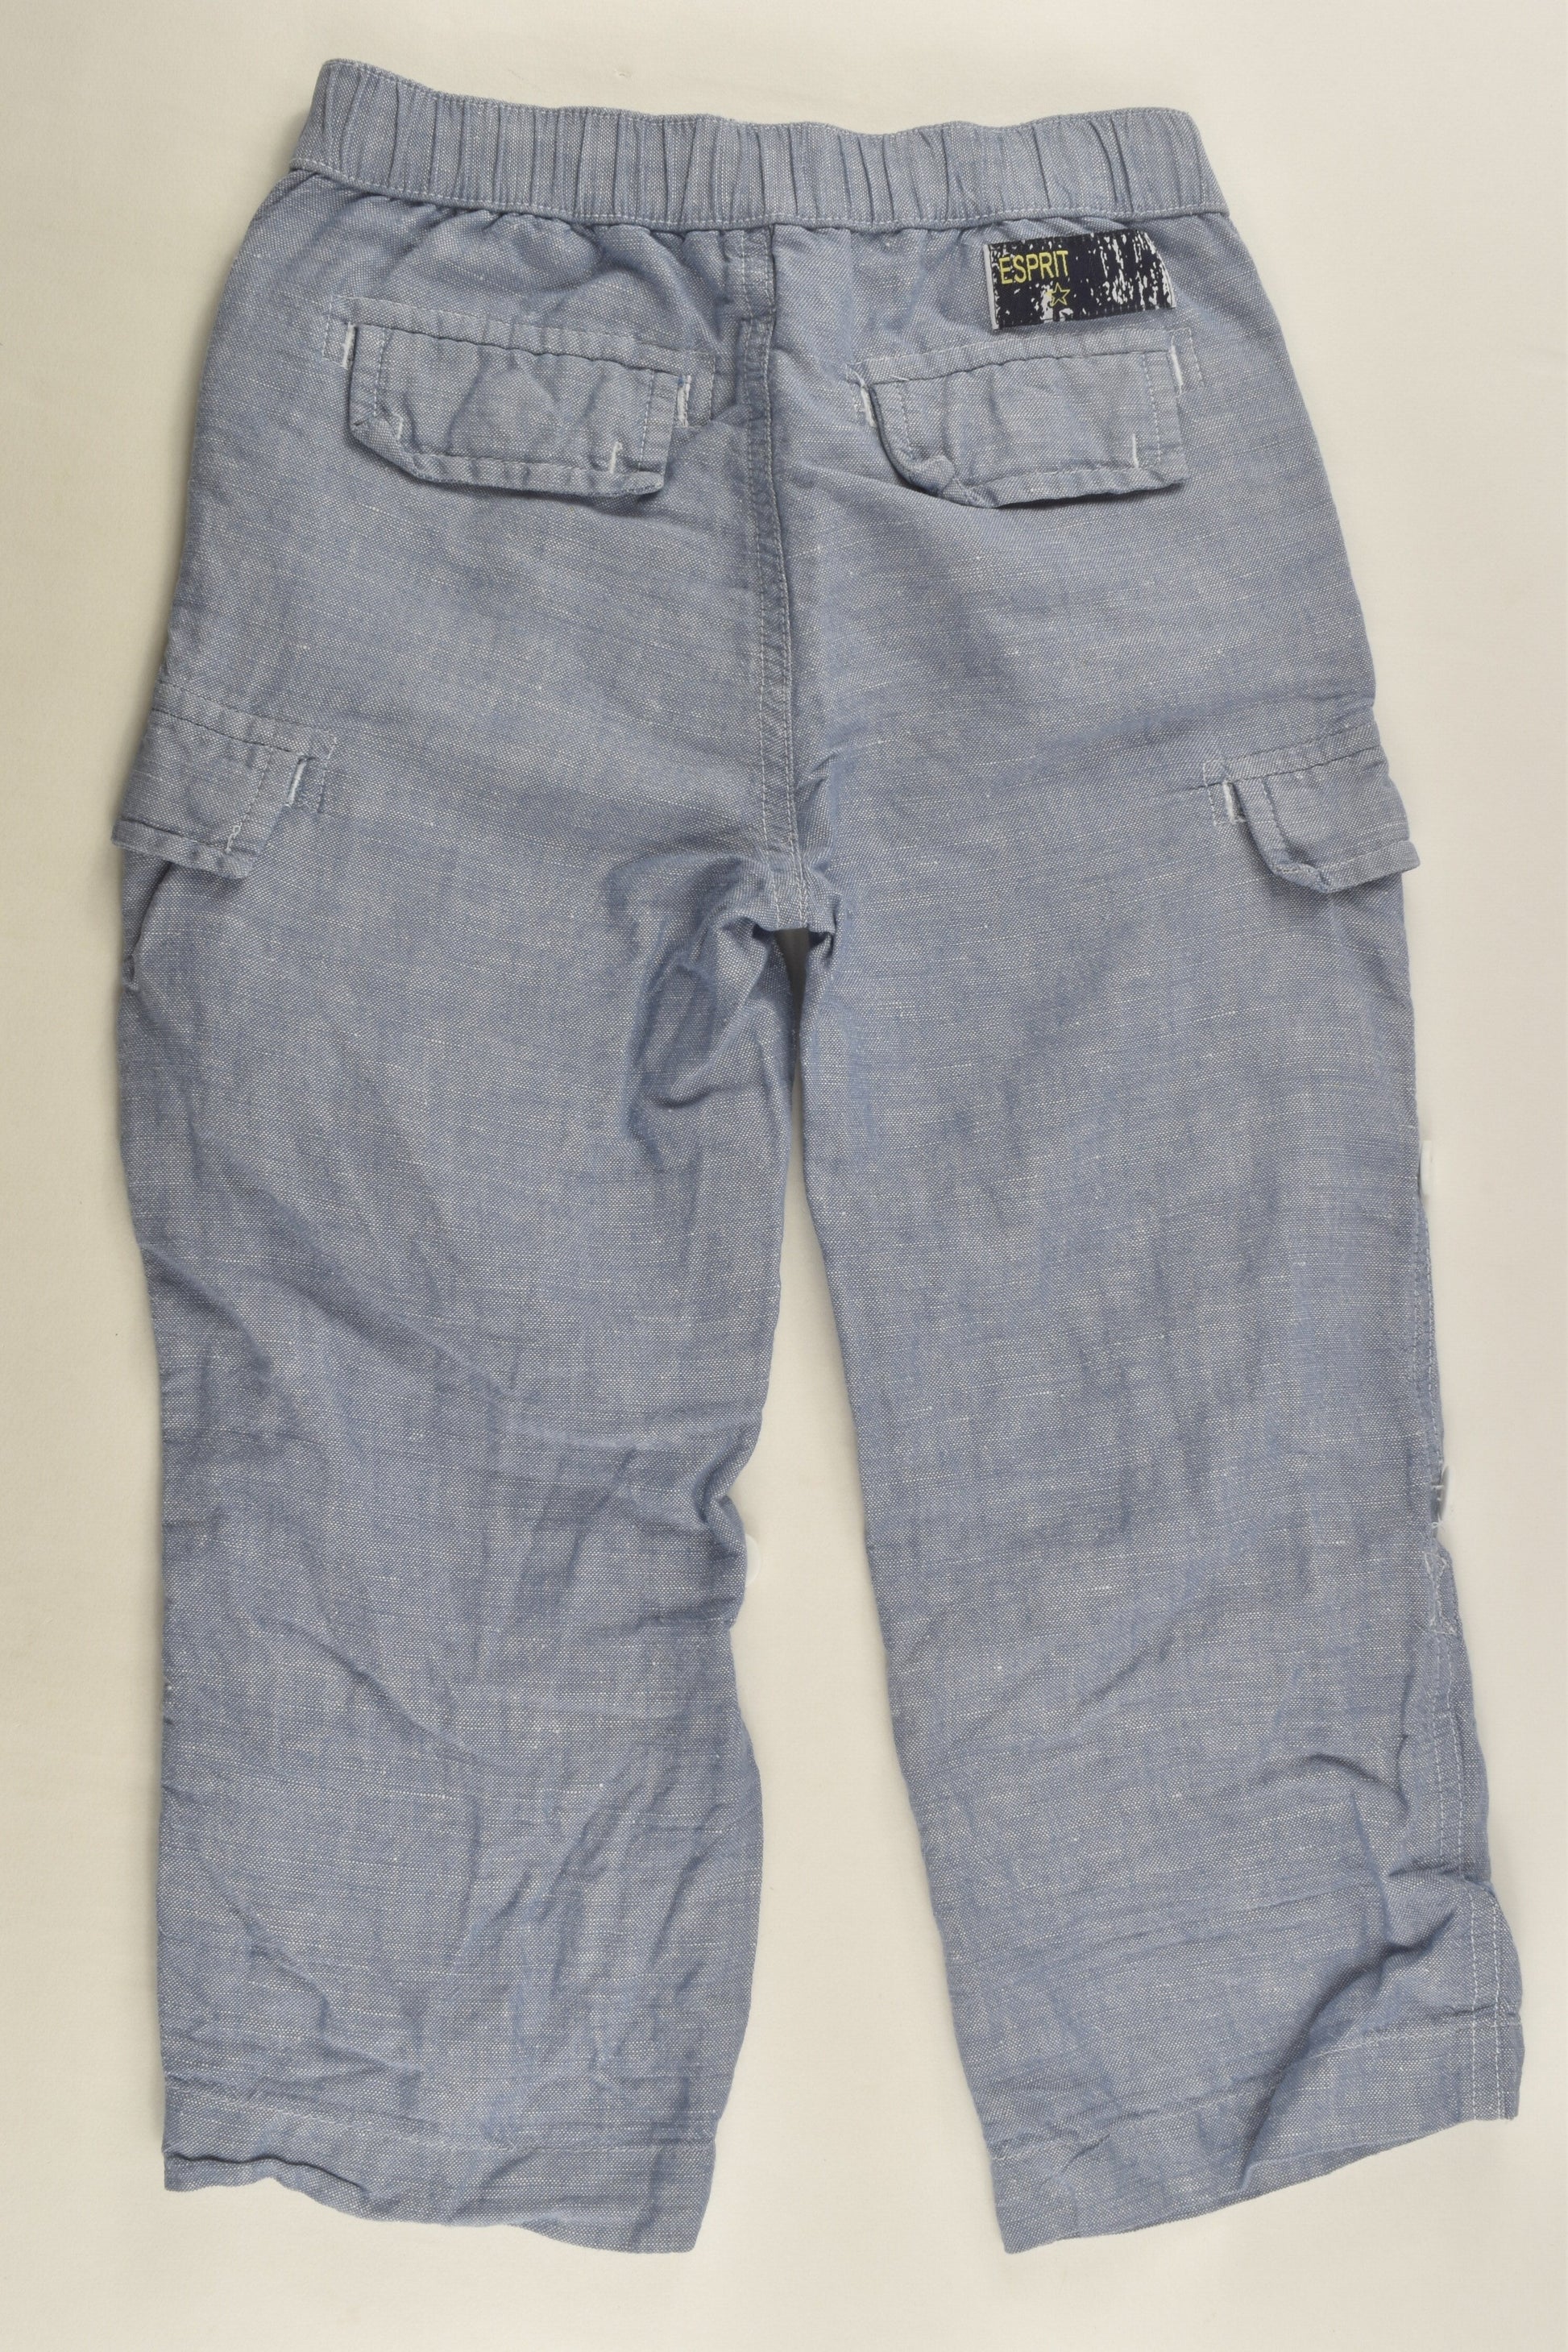 Esprit Size 3 Linen Blend Pants